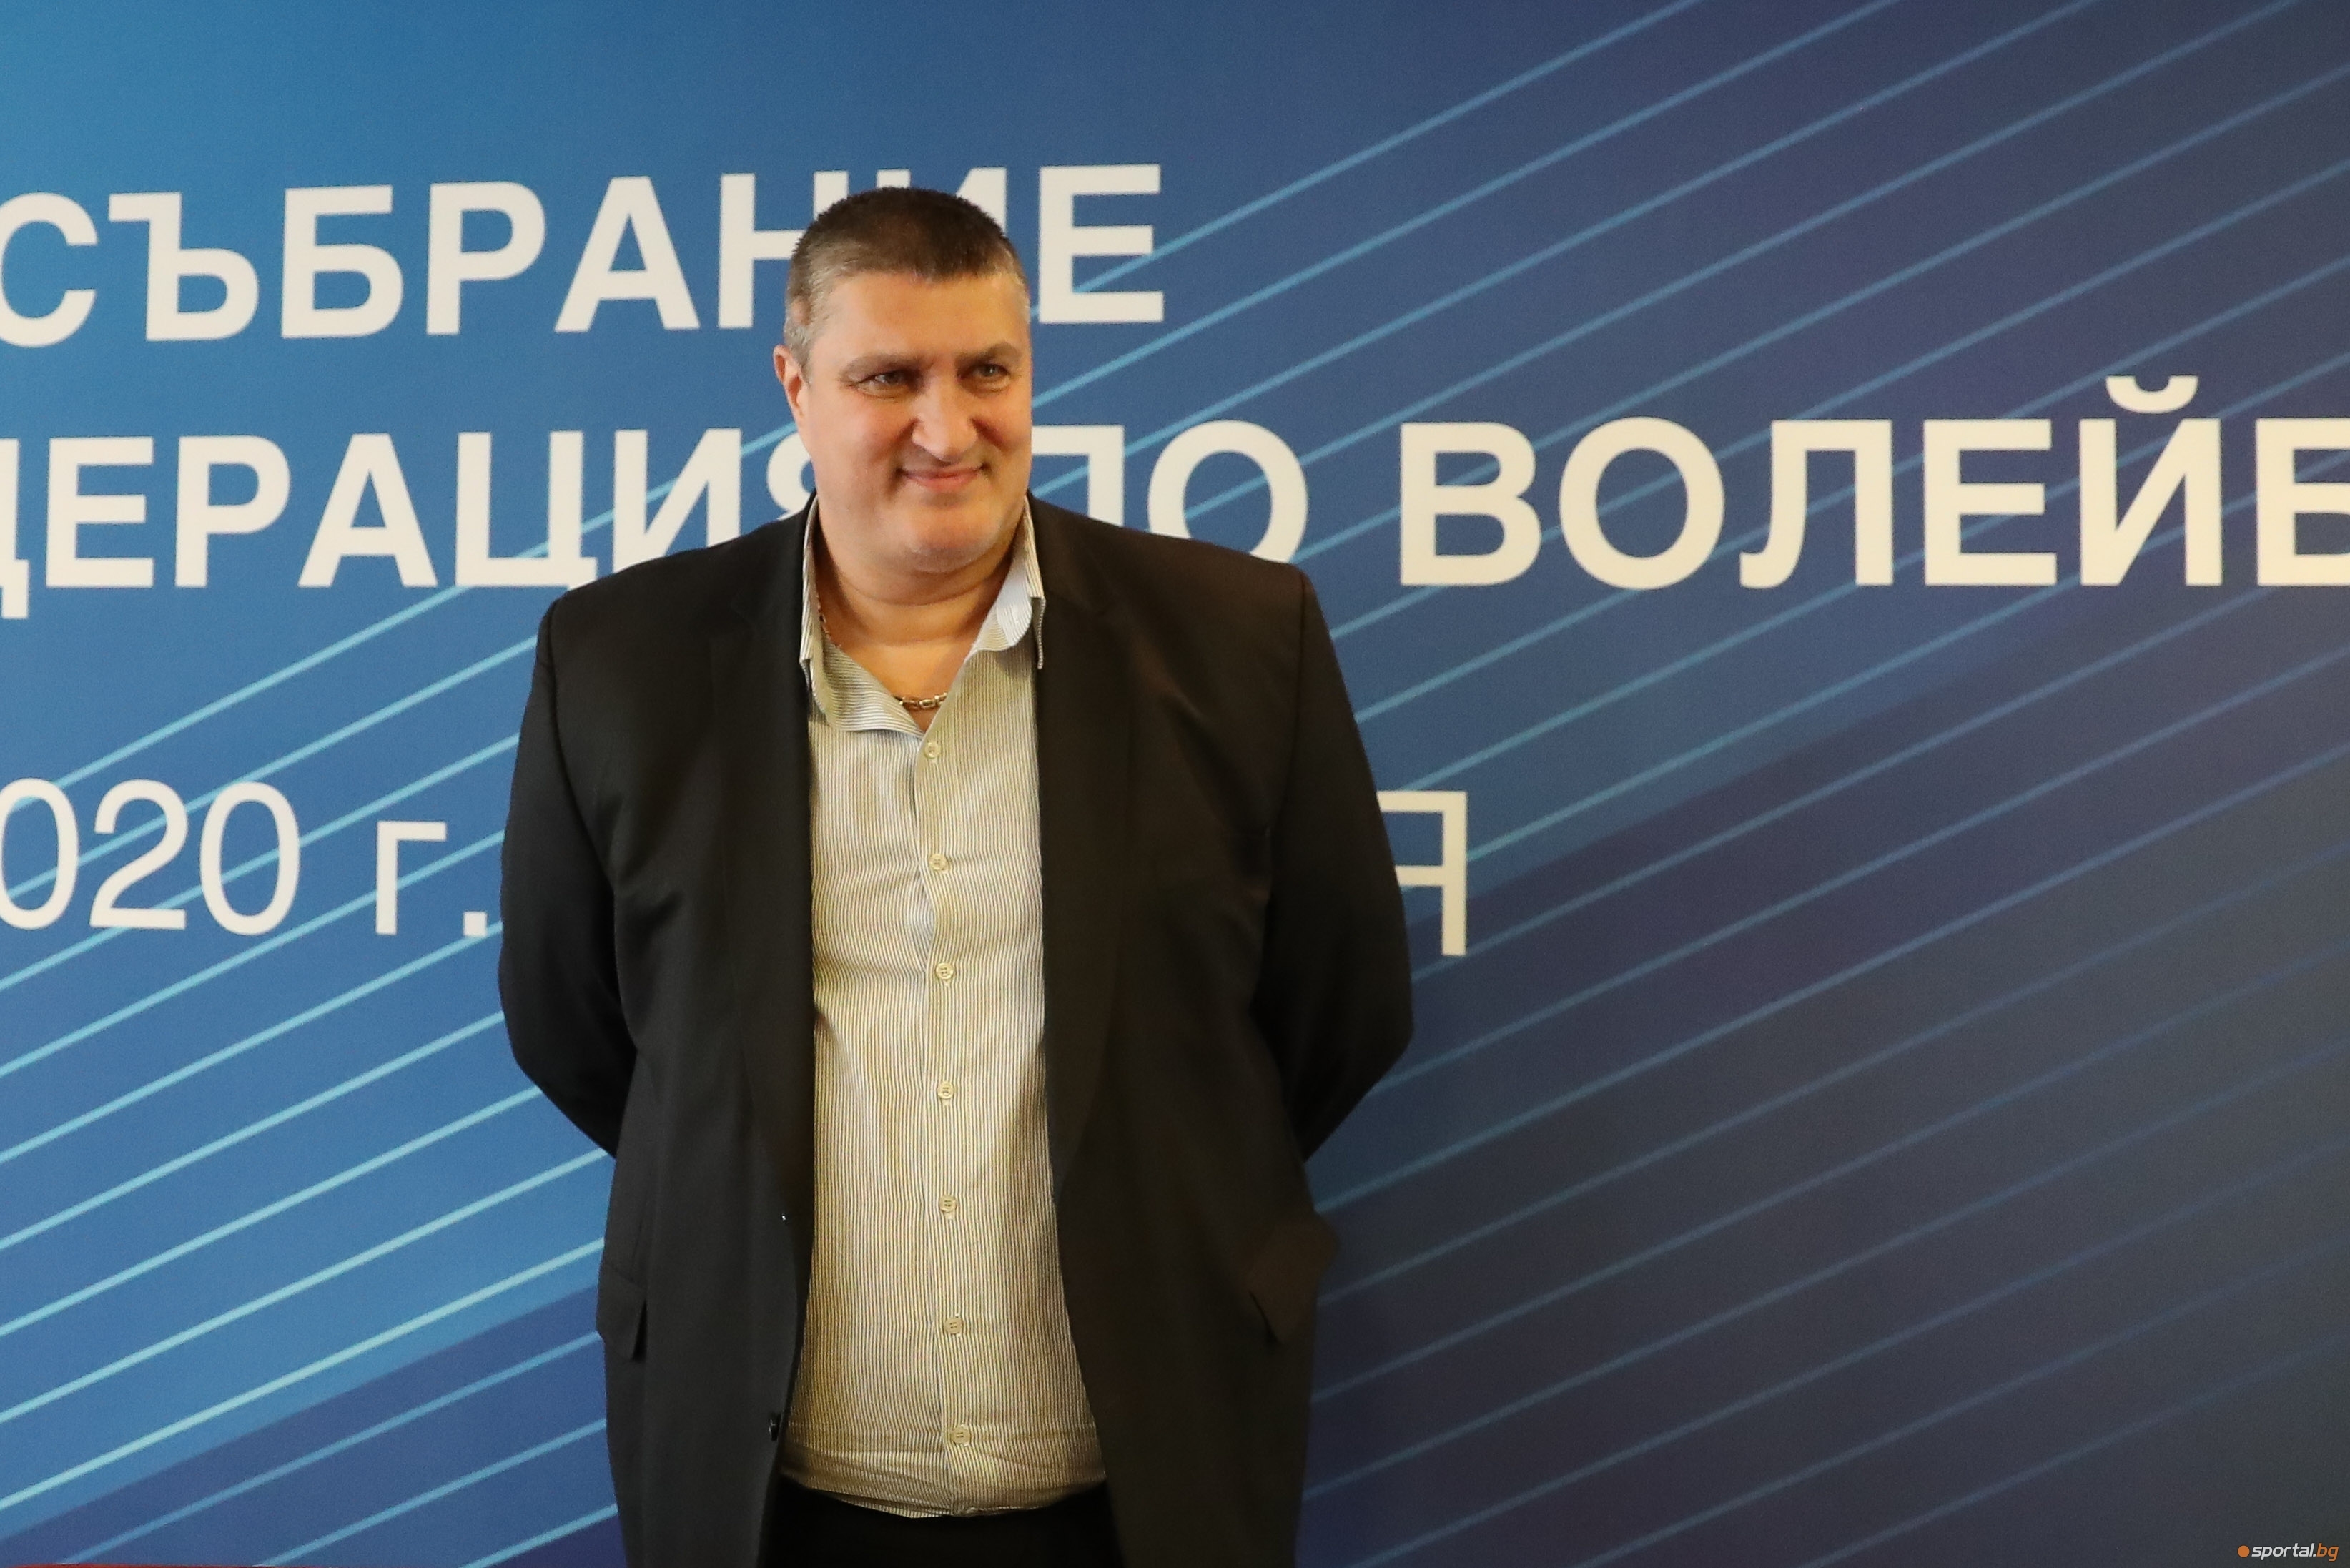 Любомир Ганев вече официално е президент на Българската федерация по